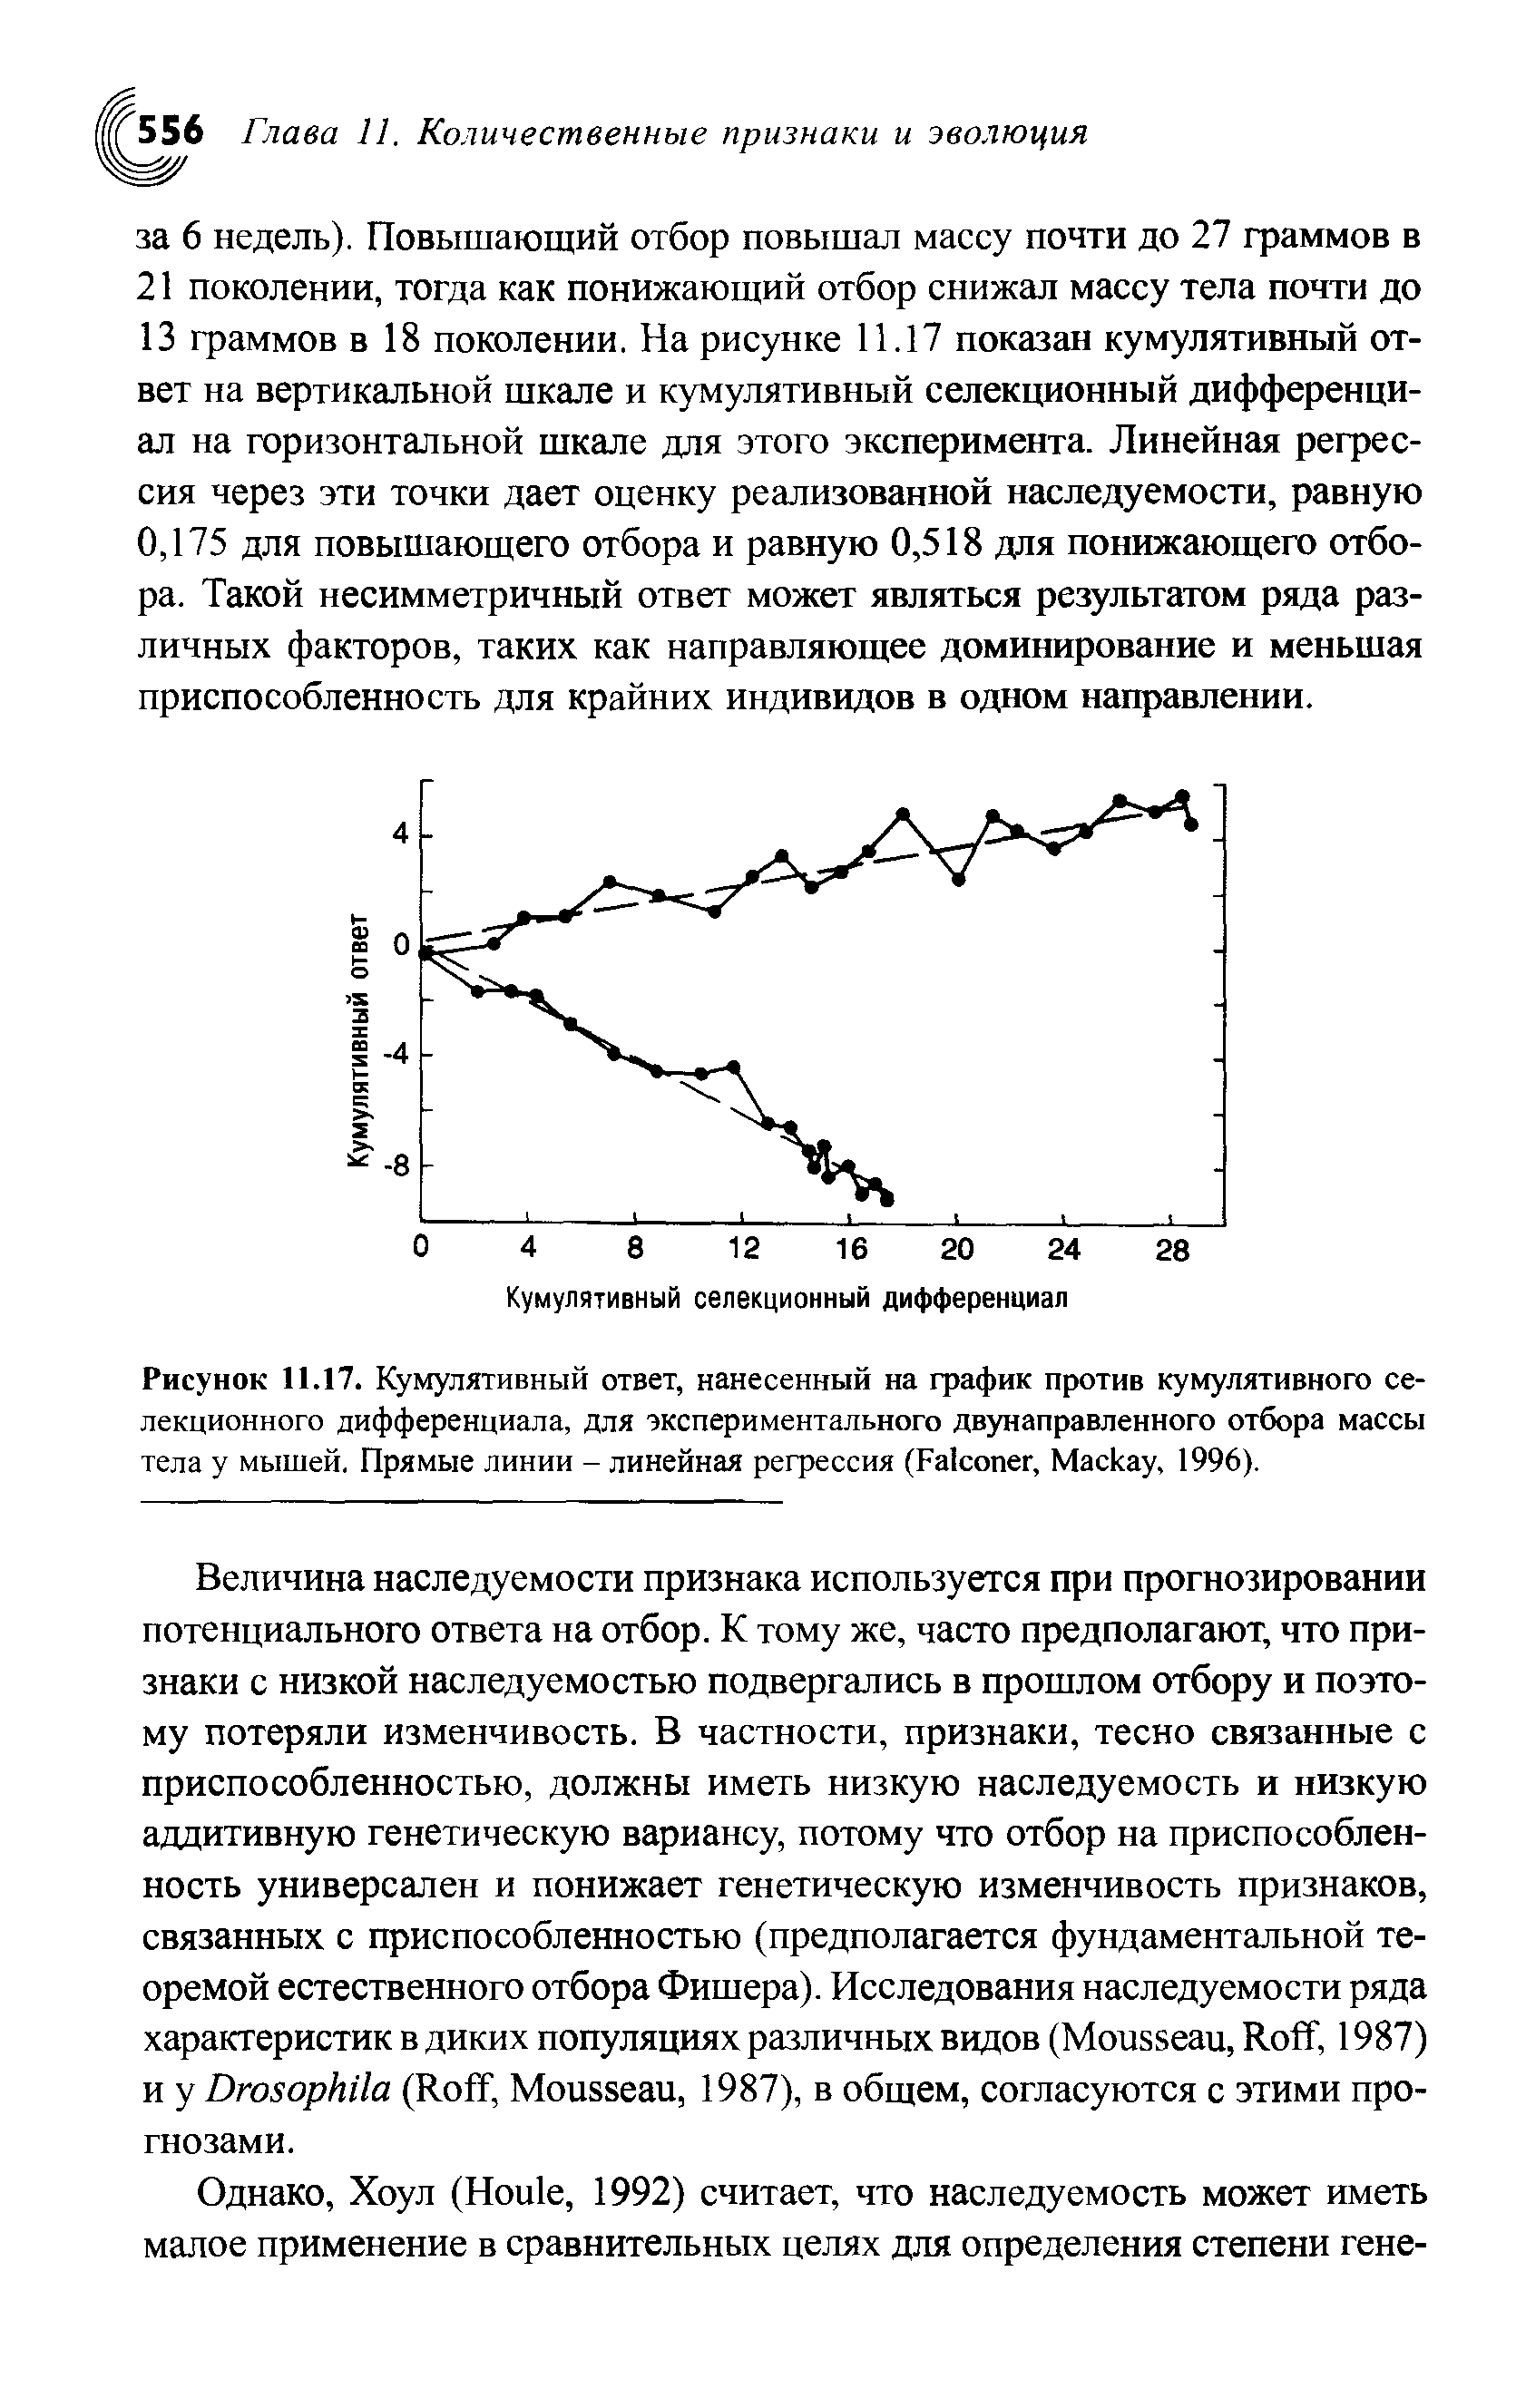 Рисунок 11.17. Кумулятивный ответ, нанесенный на график против кумулятивного селекционного дифференциала, для экспериментального двунаправленного отбора массы тела у мышей. Прямые линии - линейная регрессия (F , M , 1996).